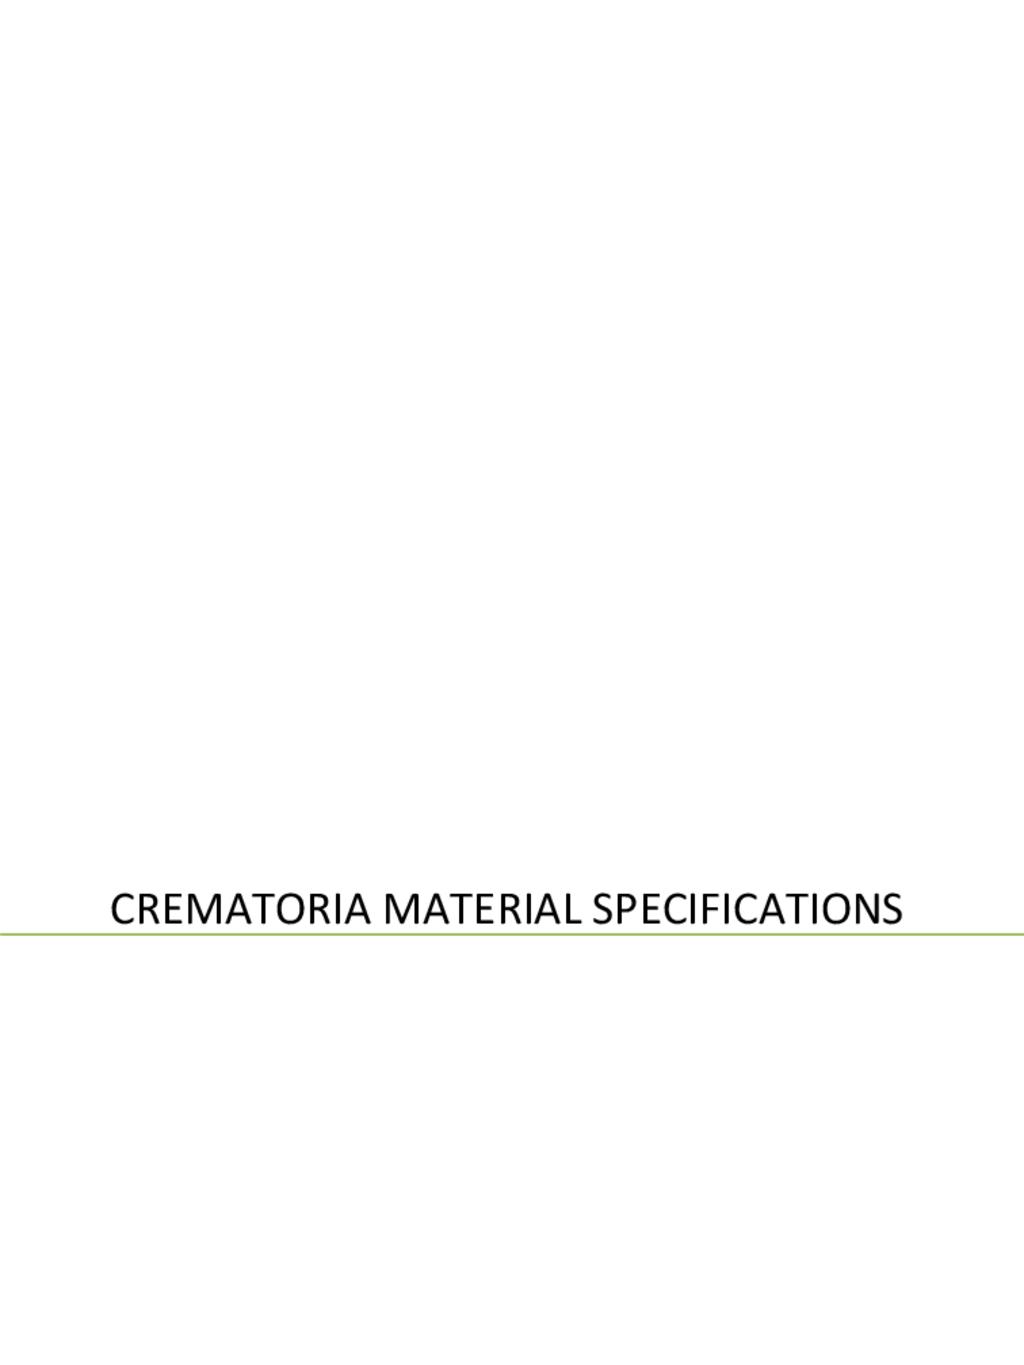 Crematoria Material Specifications